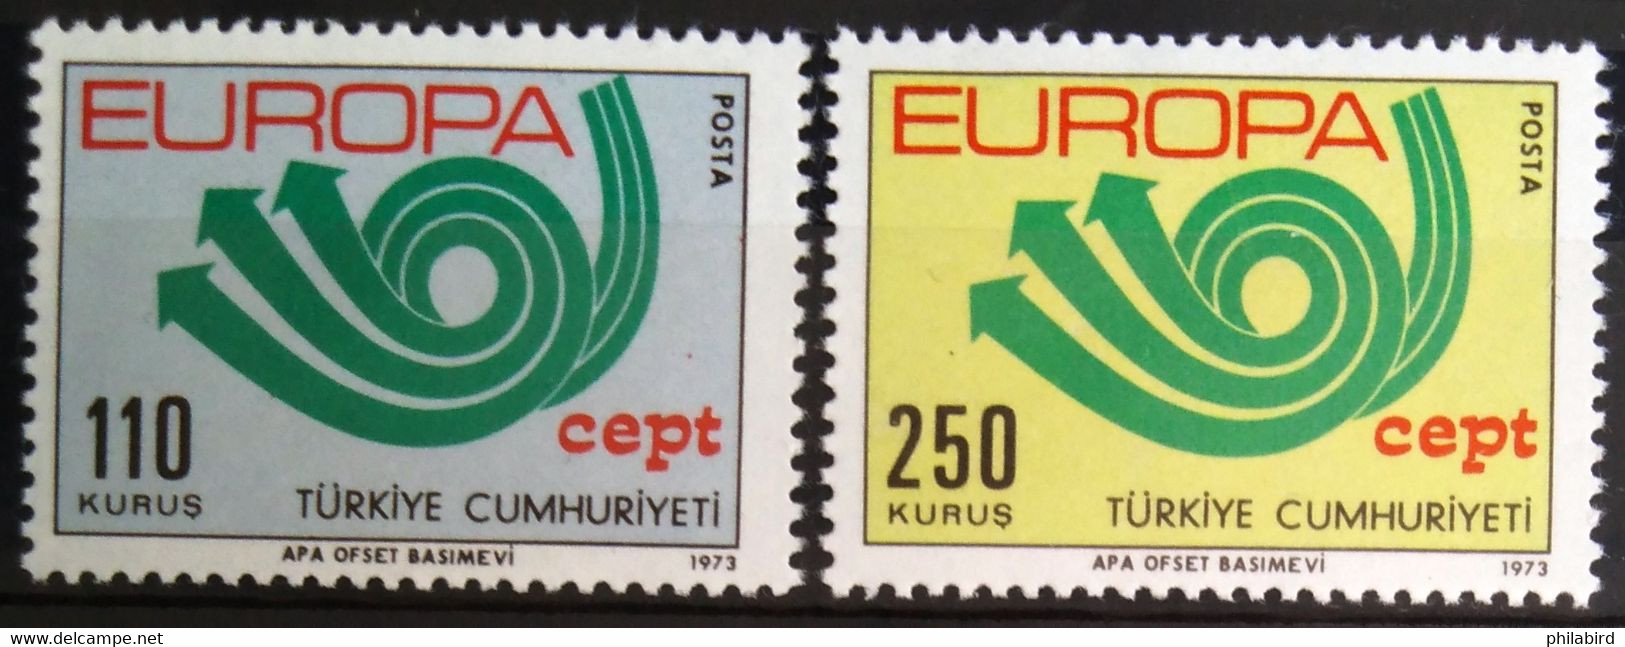 EUROPA 1973 - TURQUIE                   N° 2050/2051                      NEUF** - 1973